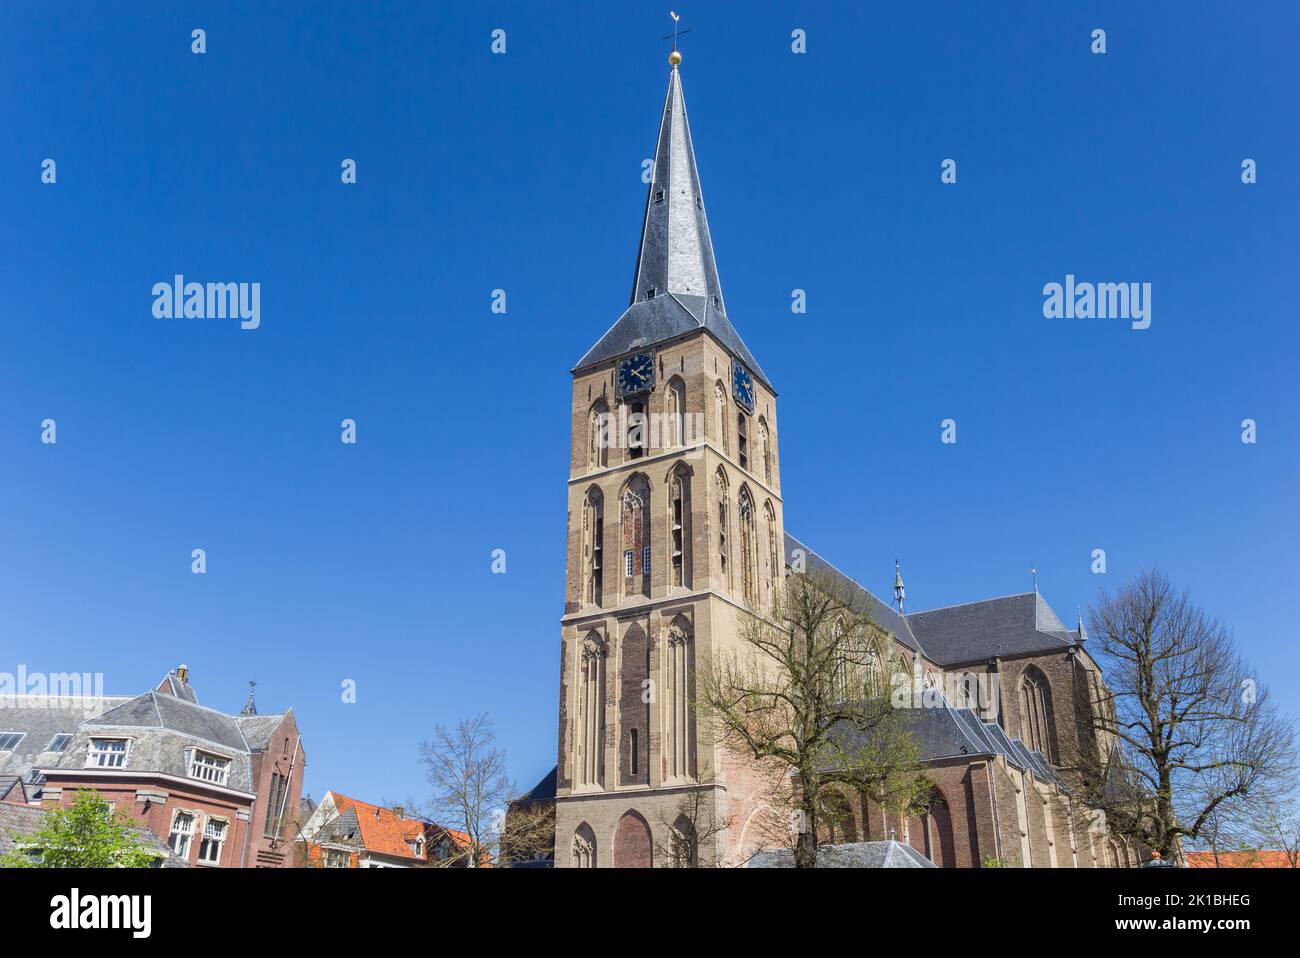 Tower of the historic Bovenkerk church in Kampen, Netherlands Stock Photo